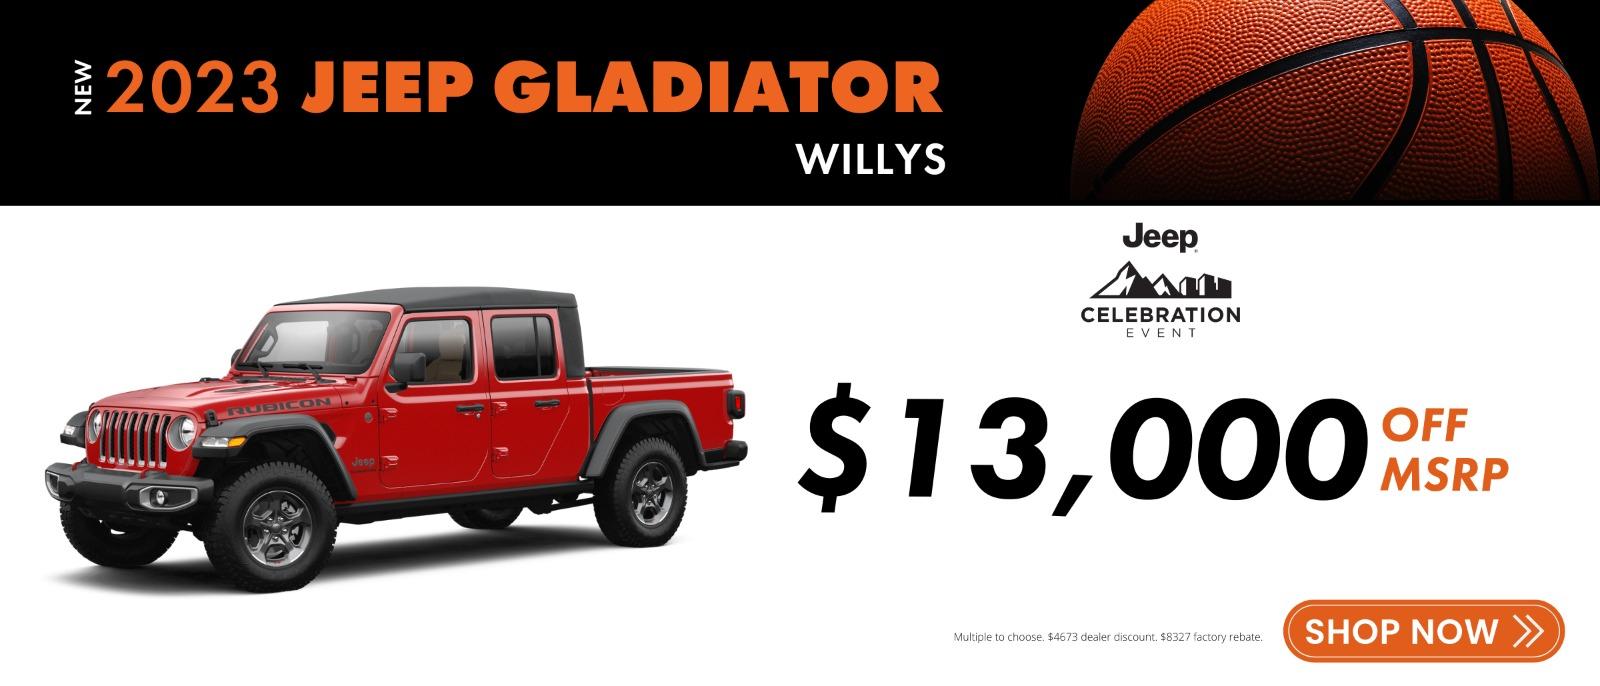 New 2023 Jeep Gladiator Willys